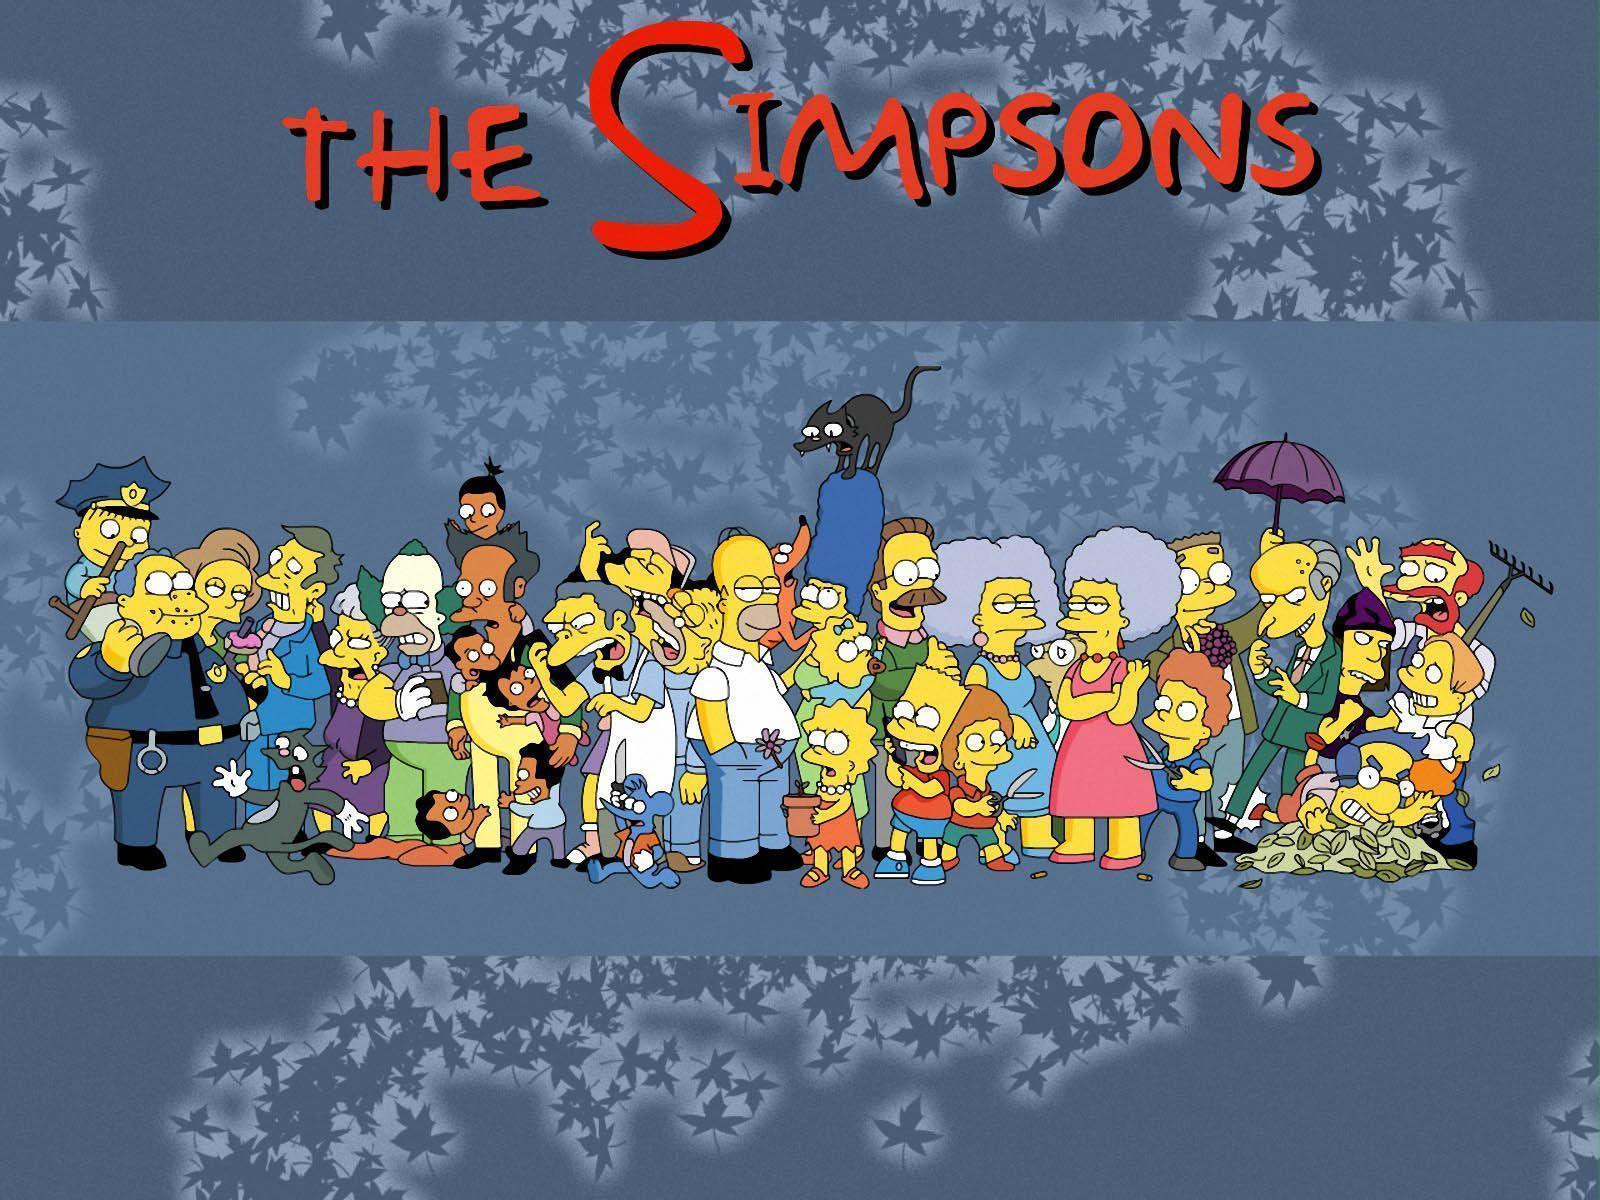 The Simpsons Wallpapers,The Simpsons Wallpapers